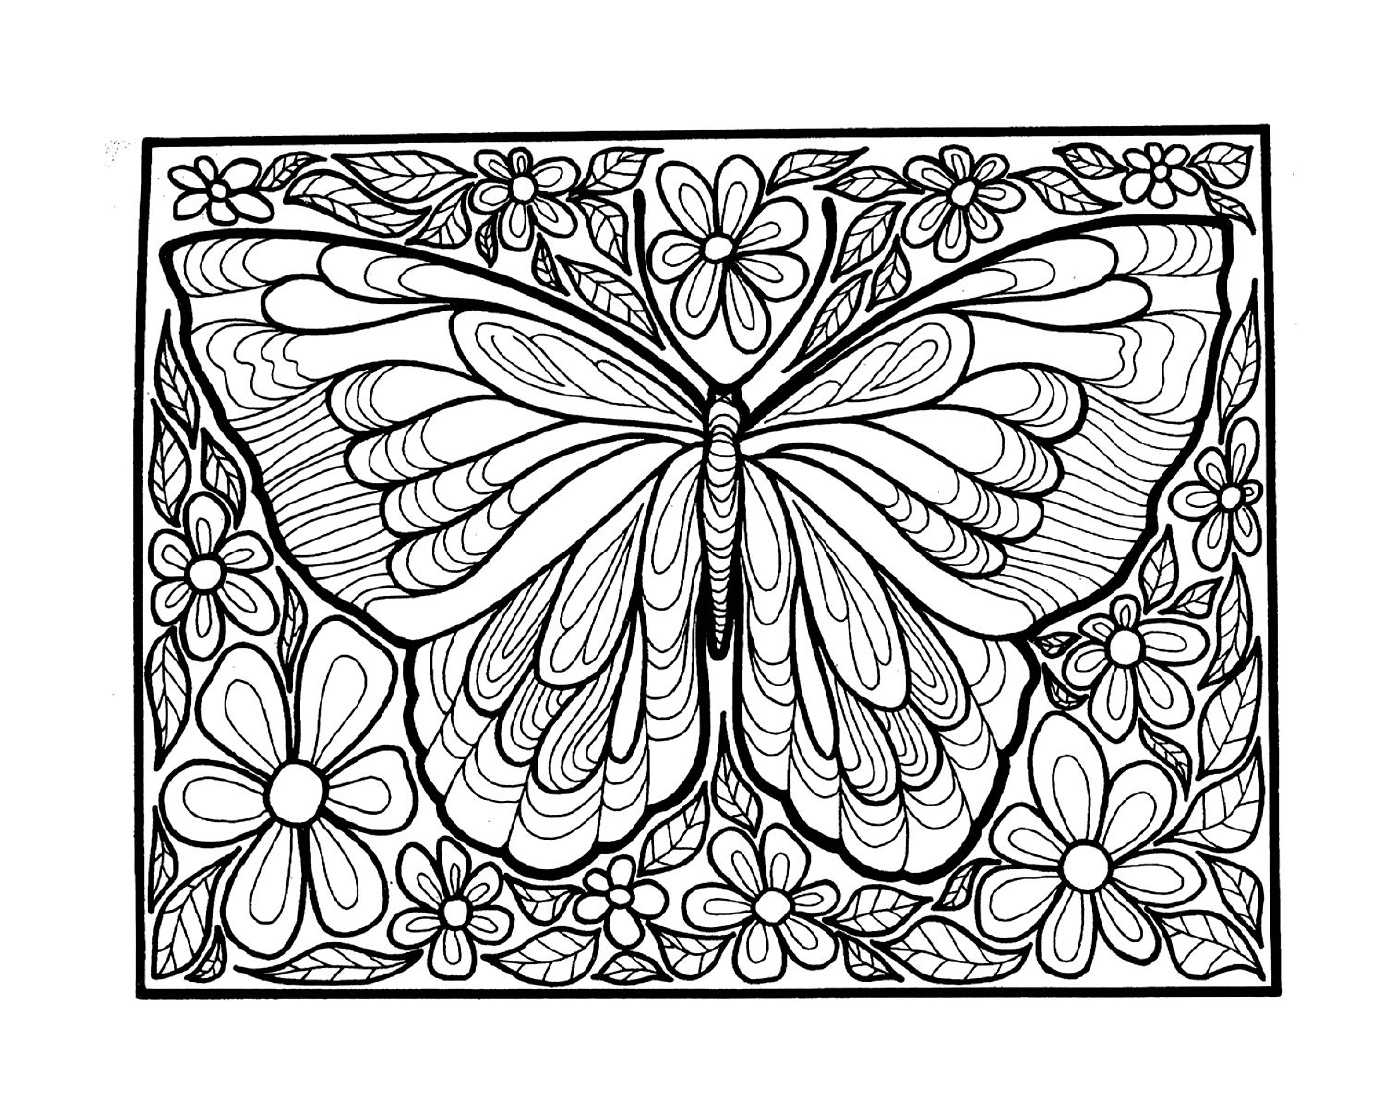  farfalla adulta con ali 